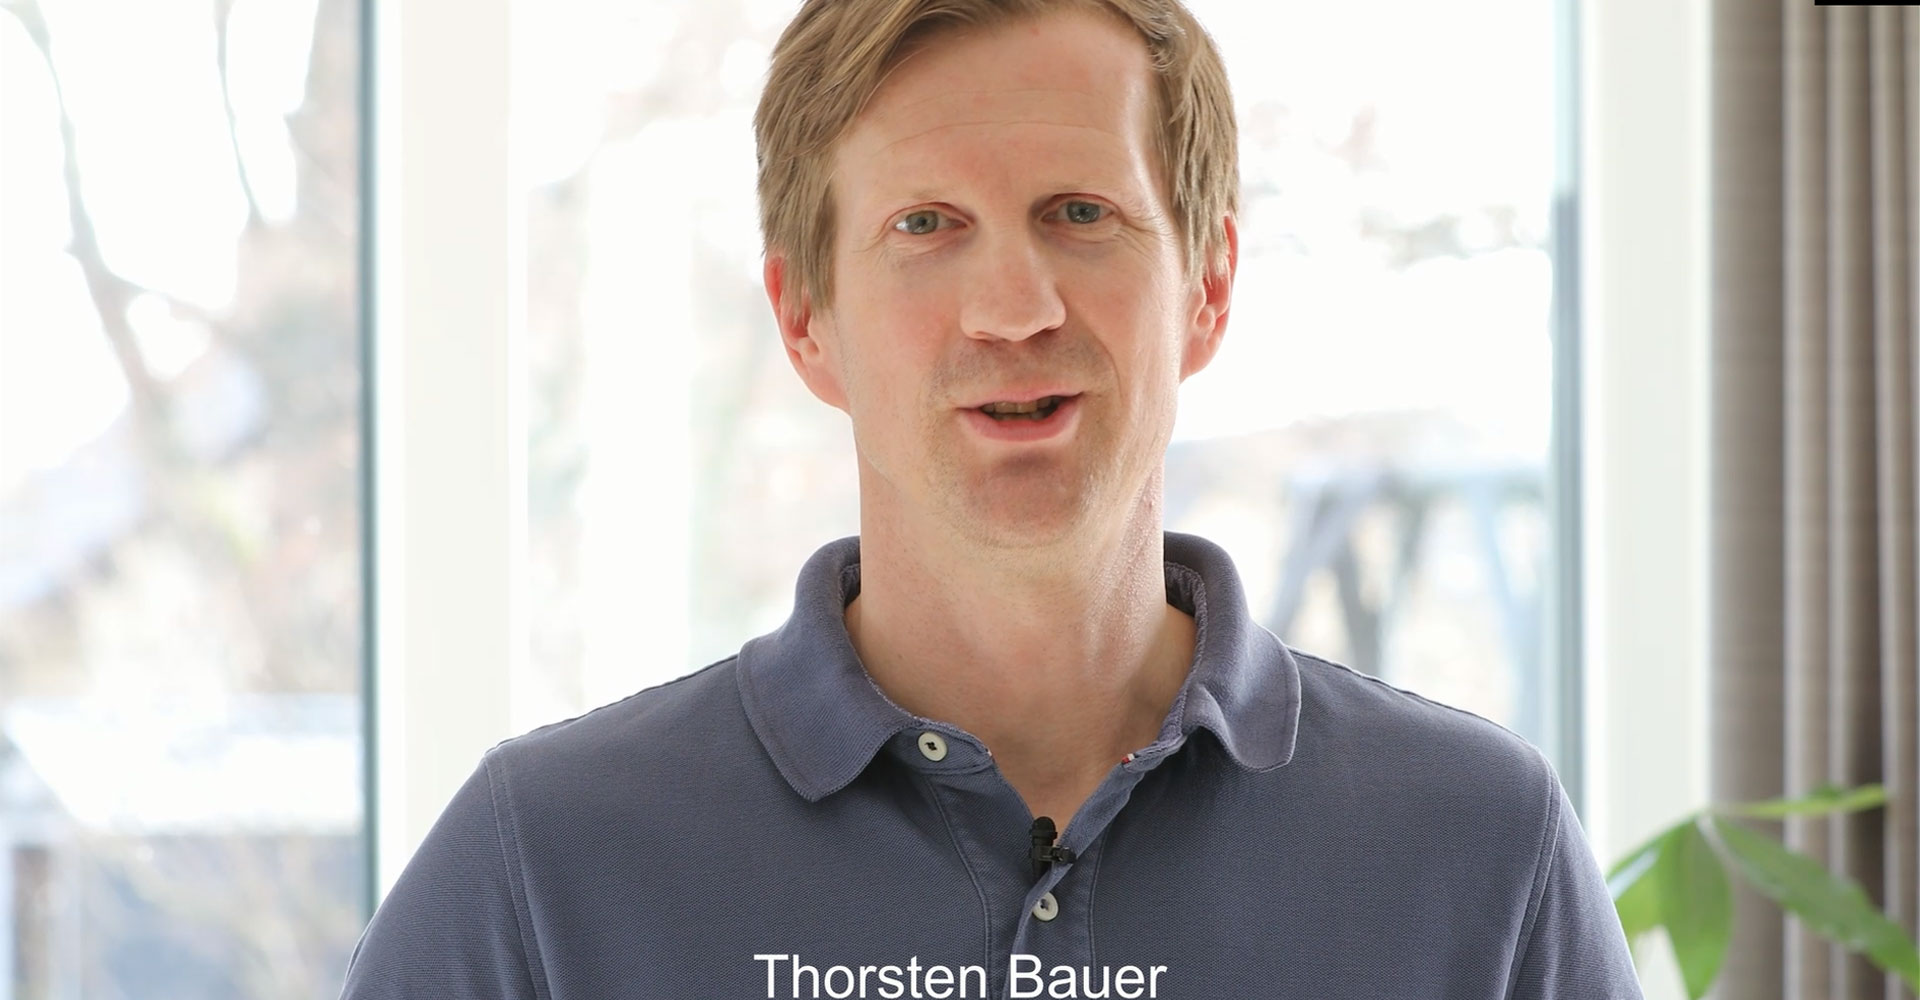 Thorsten Bauer